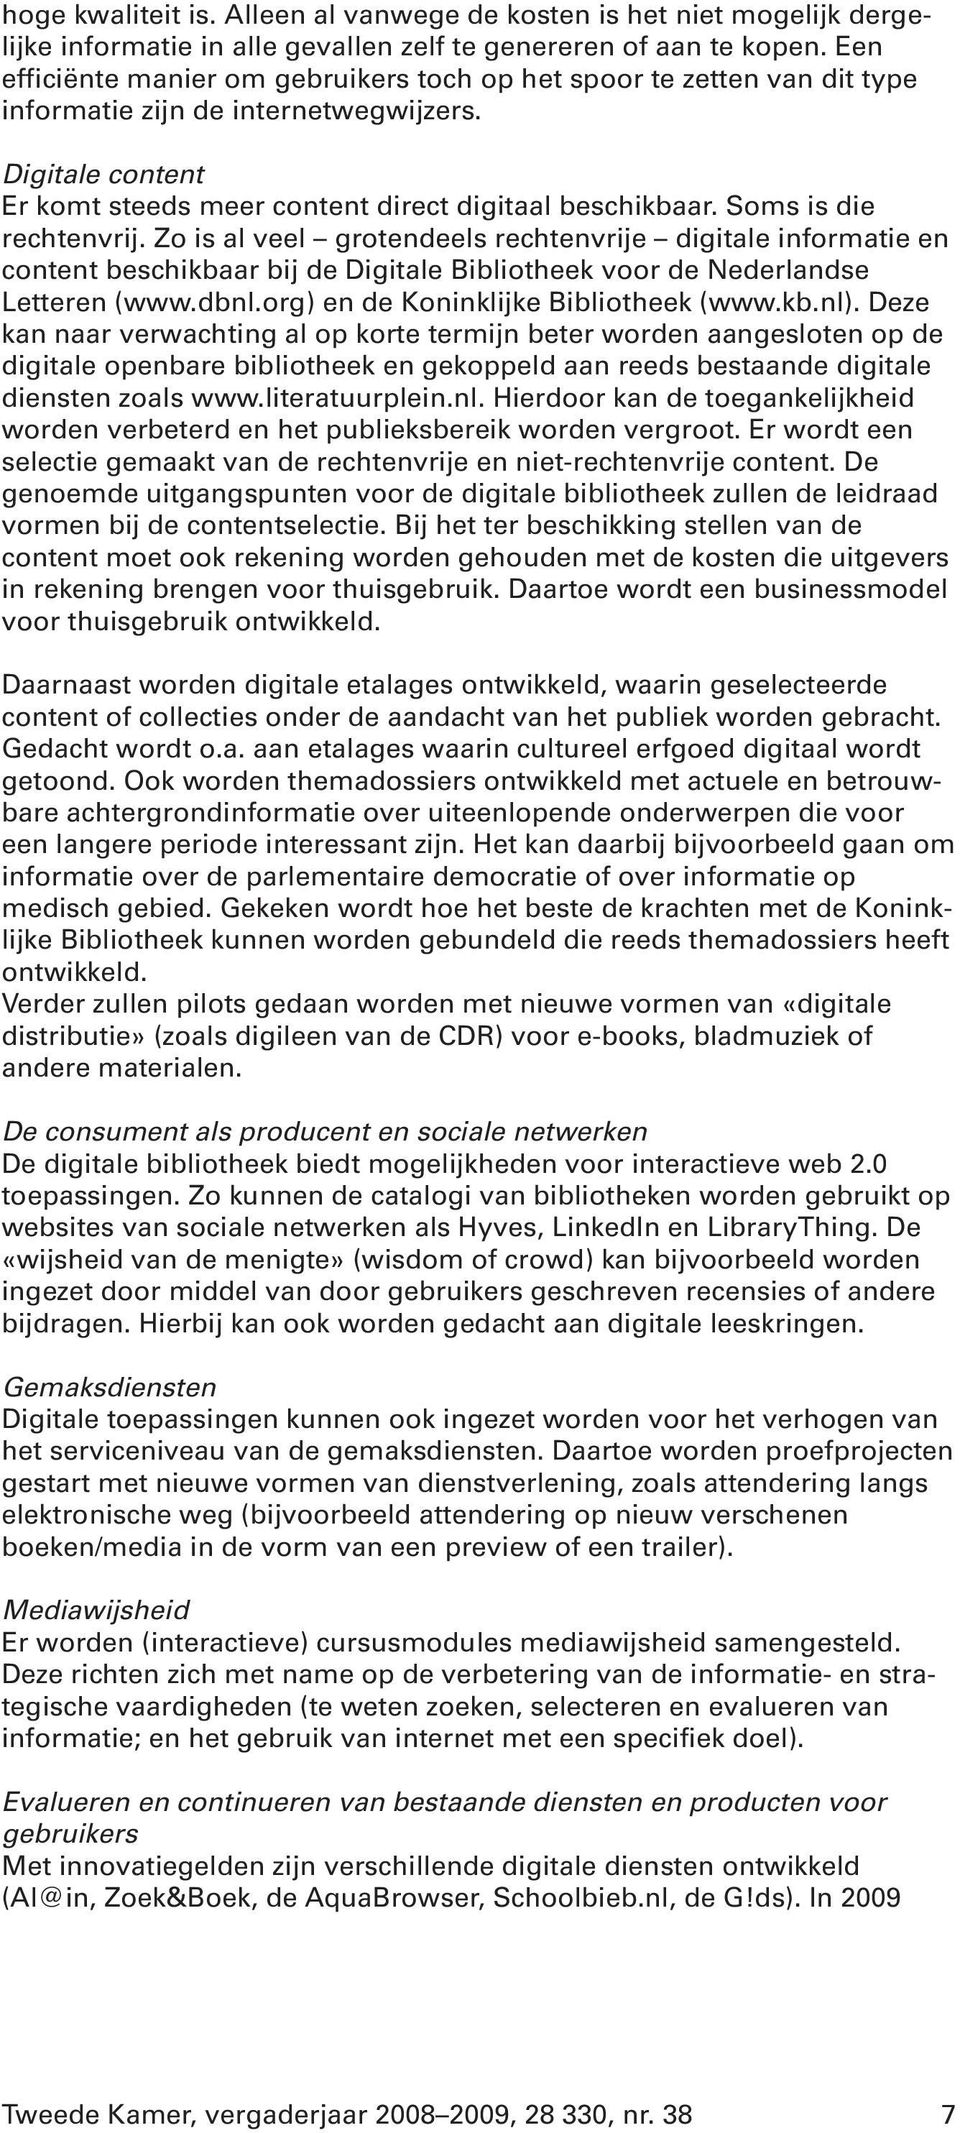 Soms is die rechtenvrij. Zo is al veel grotendeels rechtenvrije digitale informatie en content beschikbaar bij de Digitale Bibliotheek voor de Nederlandse Letteren (www.dbnl.